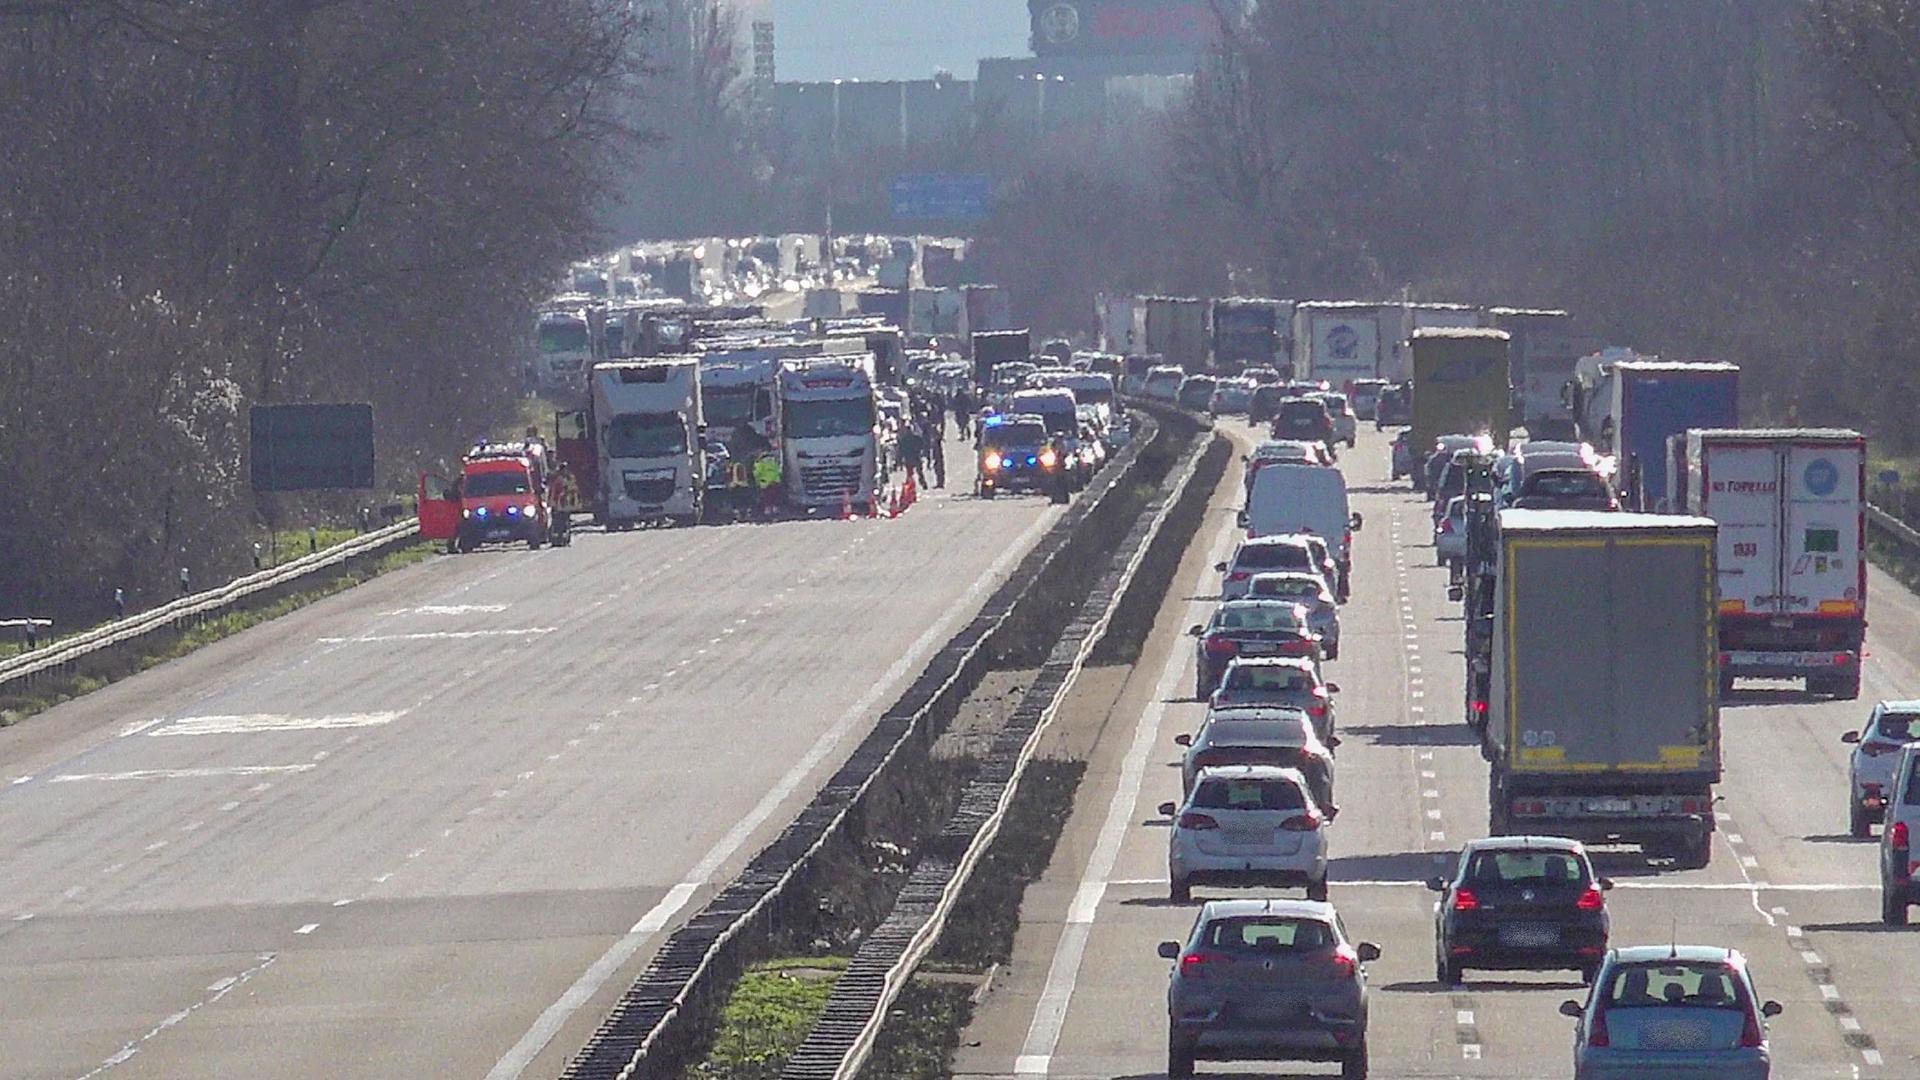 Bei dem Unfall auf der A5 zwischen Karlsruhe und Bruchsal ist nach Angaben der Polizei eine Person gestorben.